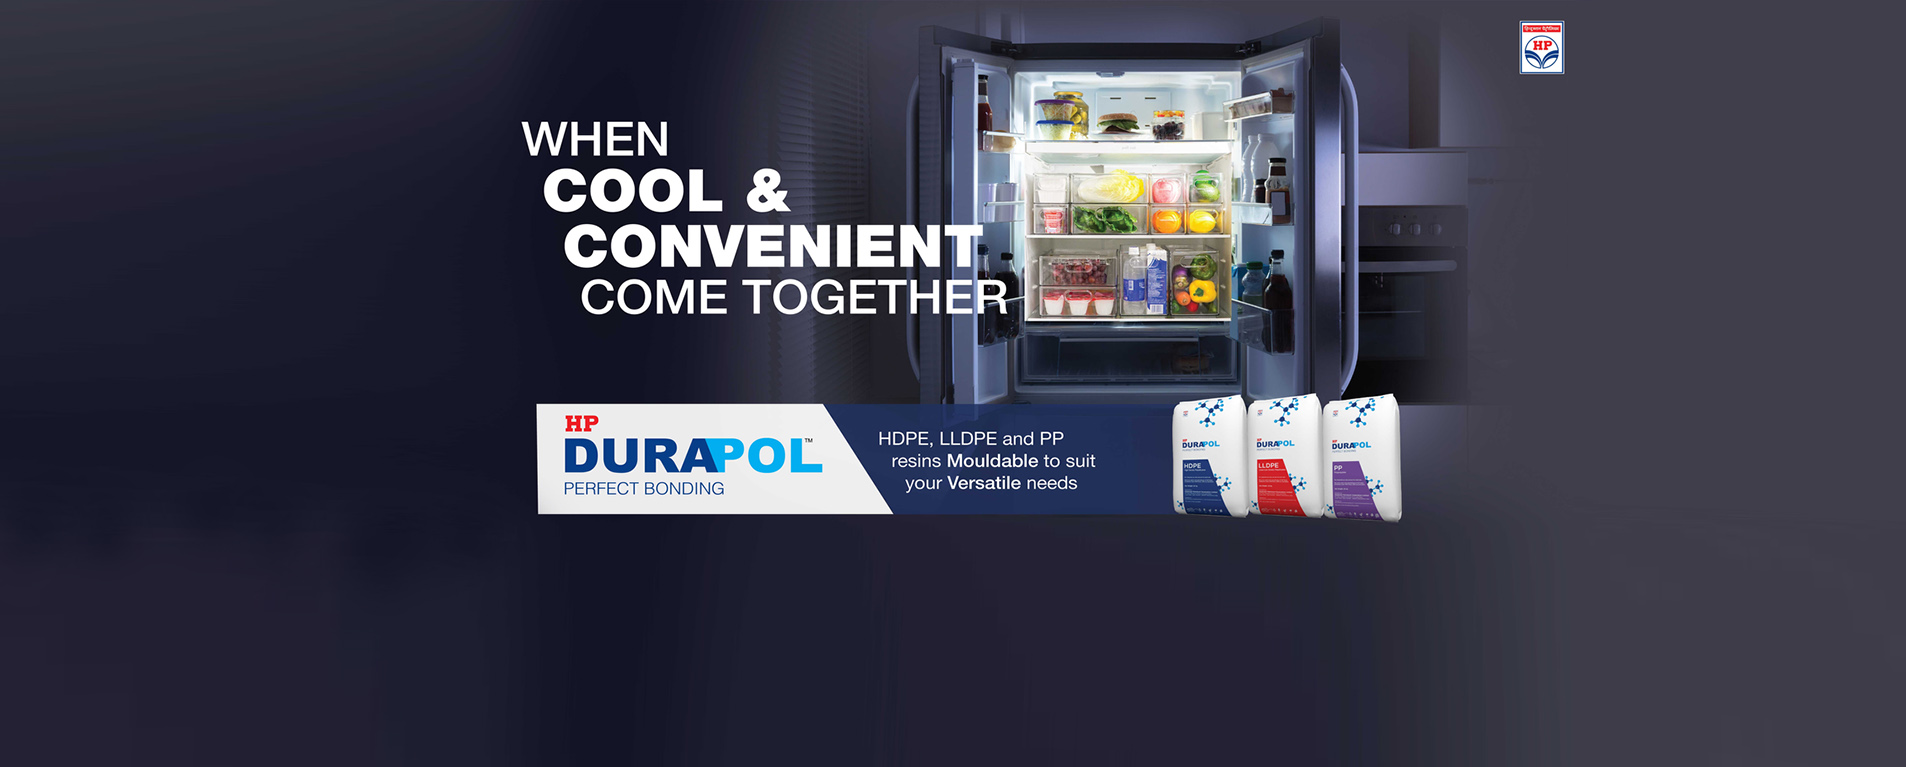 Durapol Brand Campaign - 12